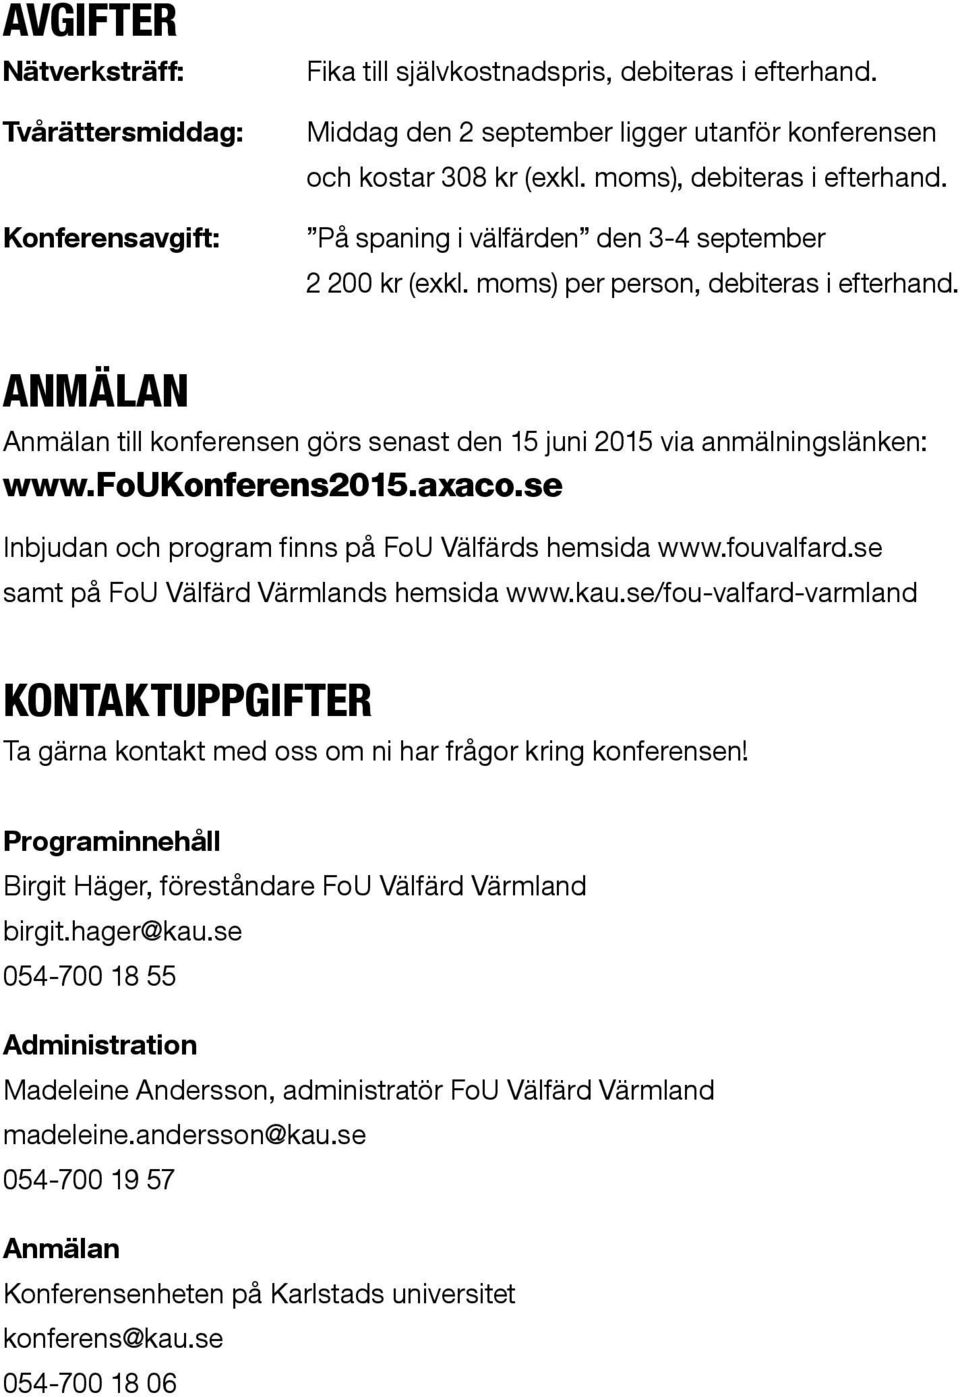 ANMÄLAN Anmälan till konferensen görs senast den 15 juni 2015 via anmälningslänken: www.foukonferens2015.axaco.se Inbjudan och program finns på FoU Välfärds hemsida www.fouvalfard.